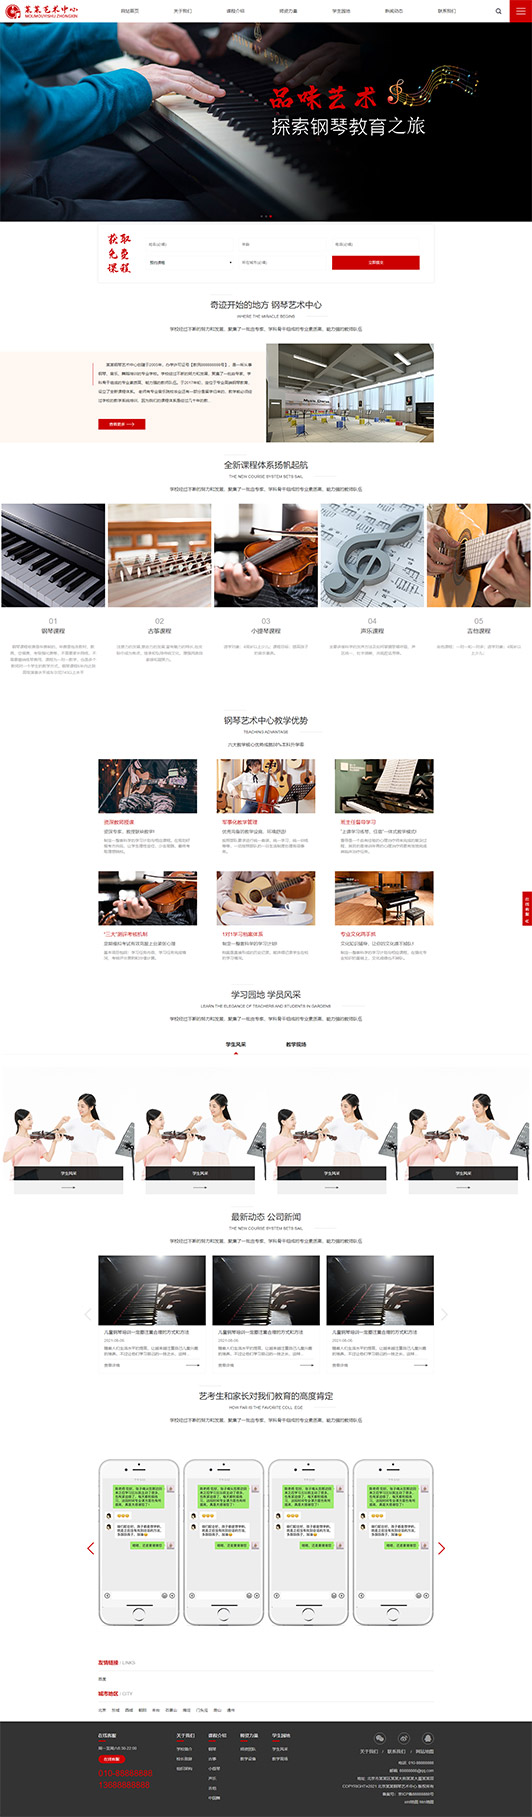 鹰潭钢琴艺术培训公司响应式企业网站